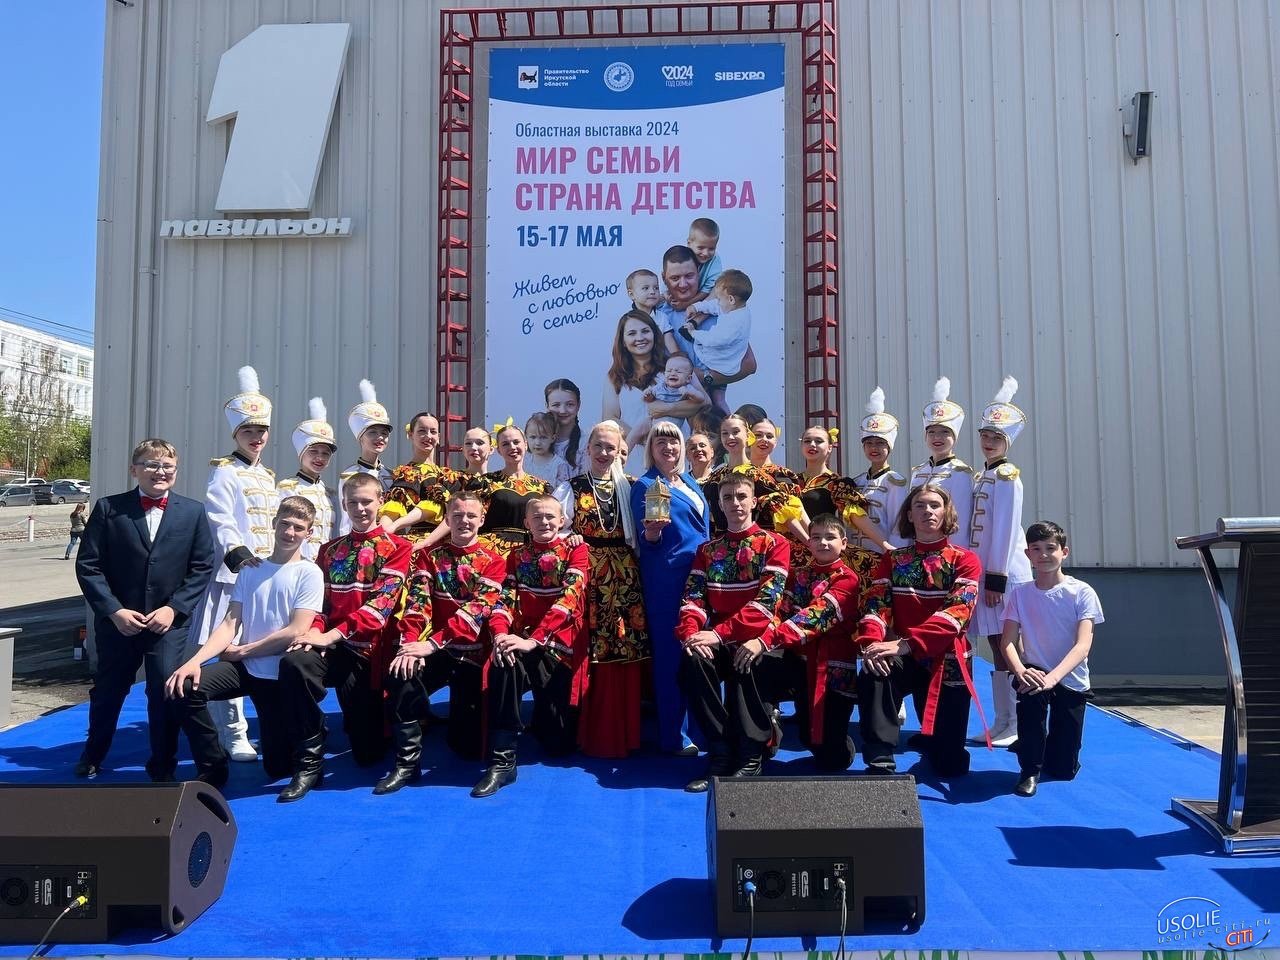 Команда усольского Дворца культуры открыла областной форум